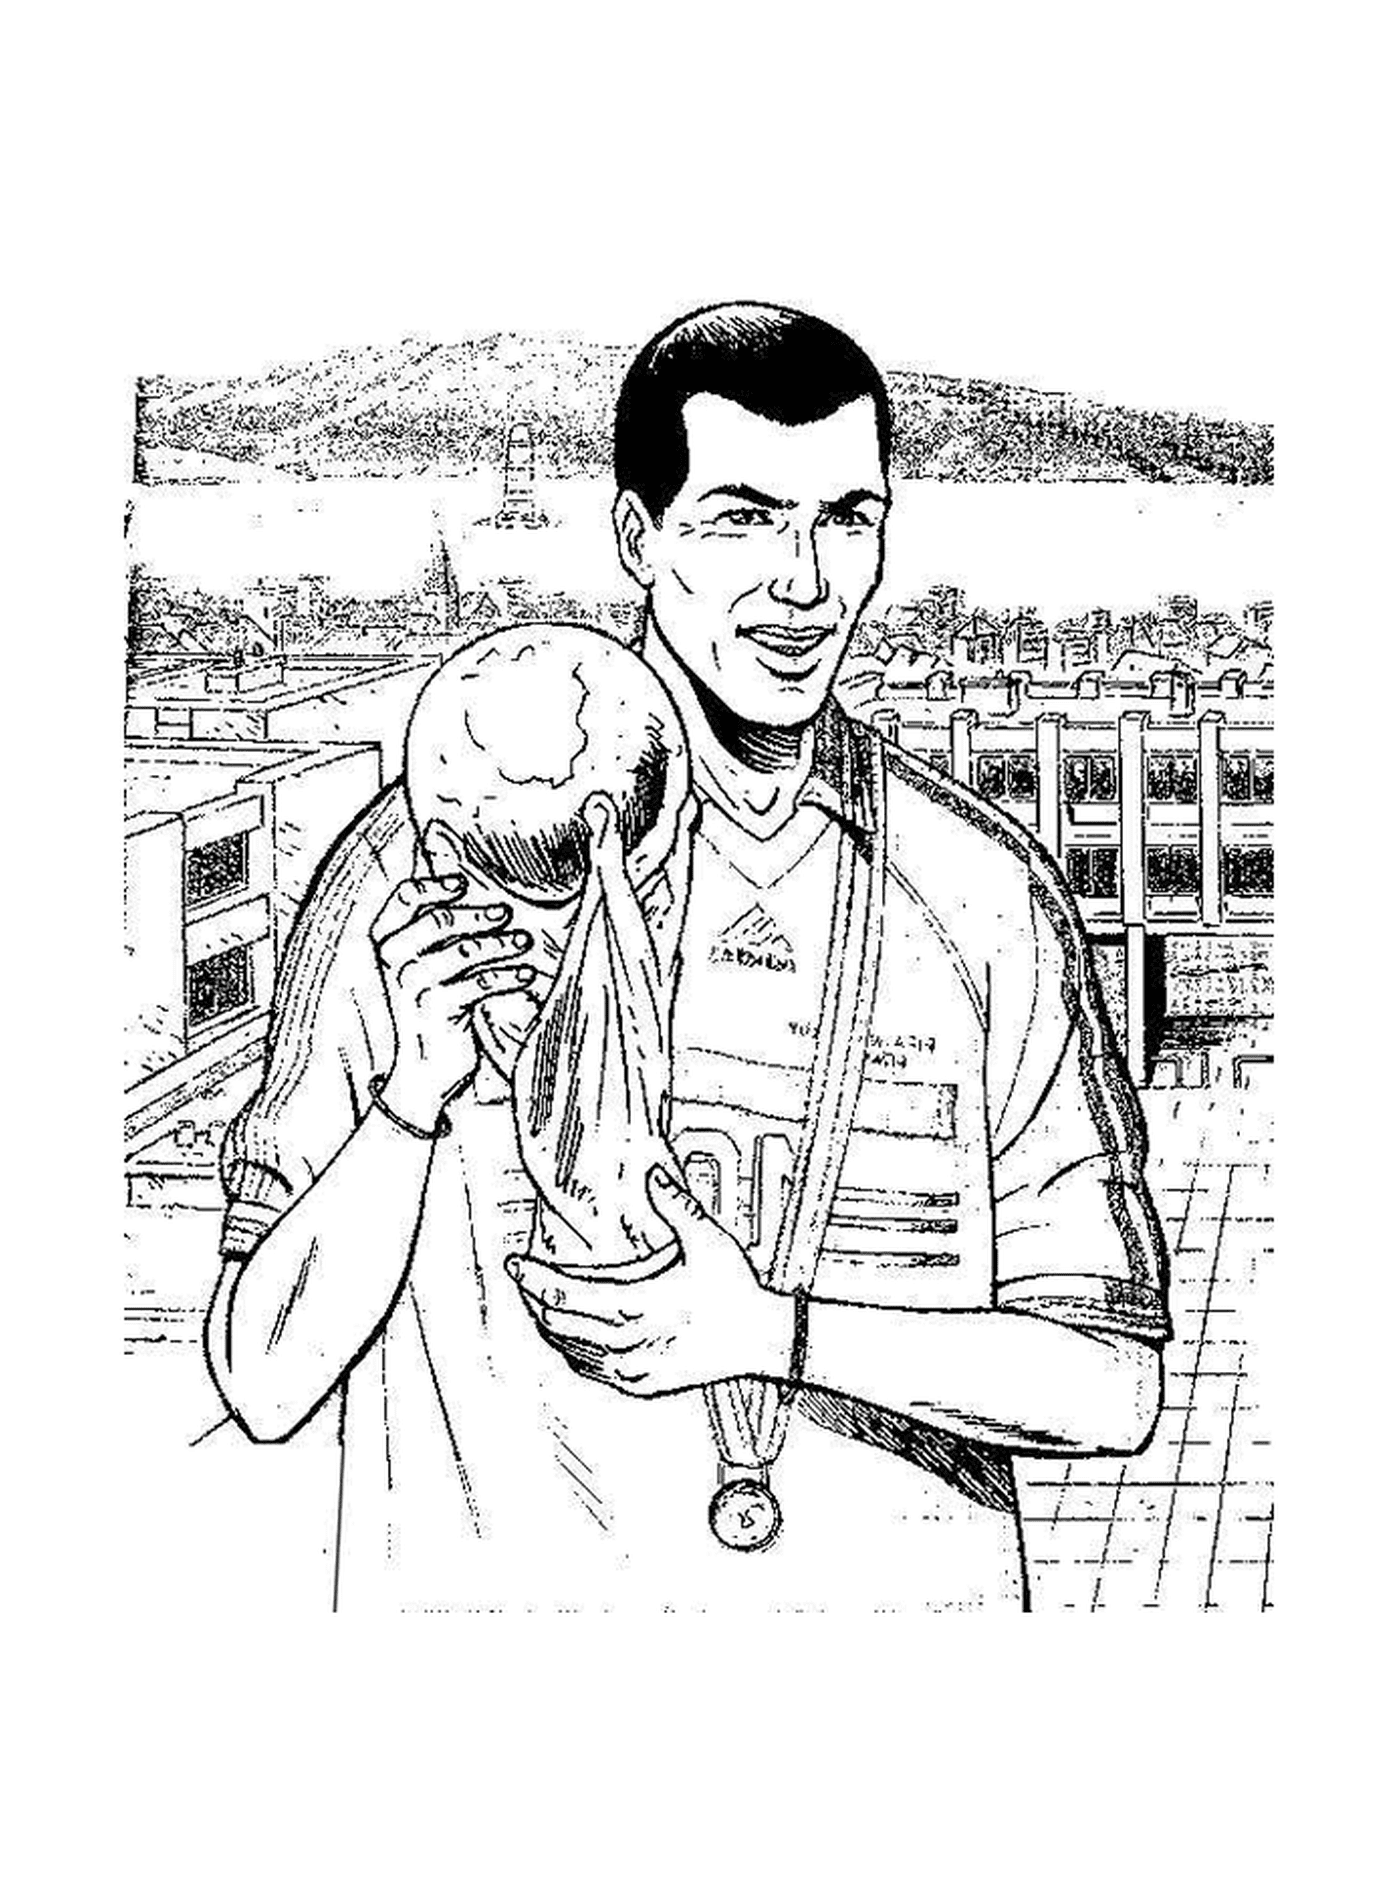  Zidane,传说中的足球运动员 